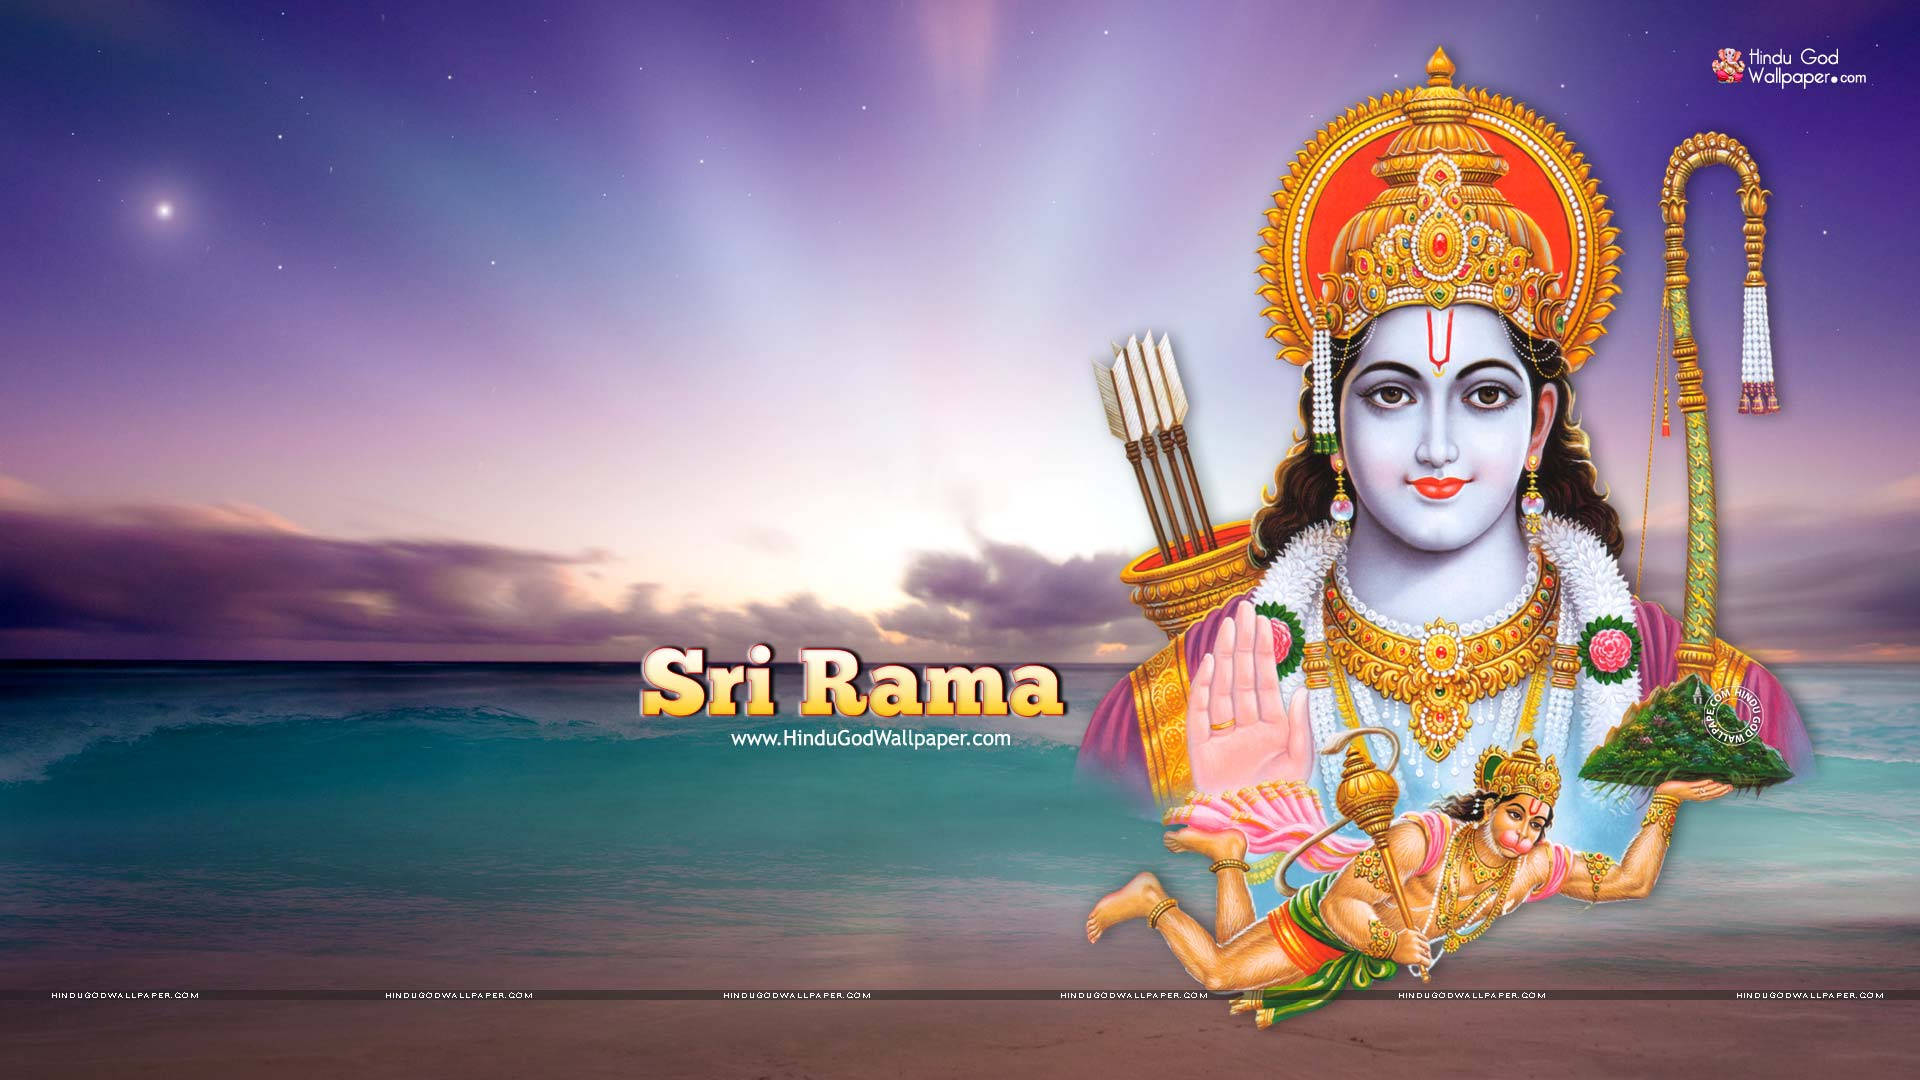 Hindu God Ram Ji Beach Background